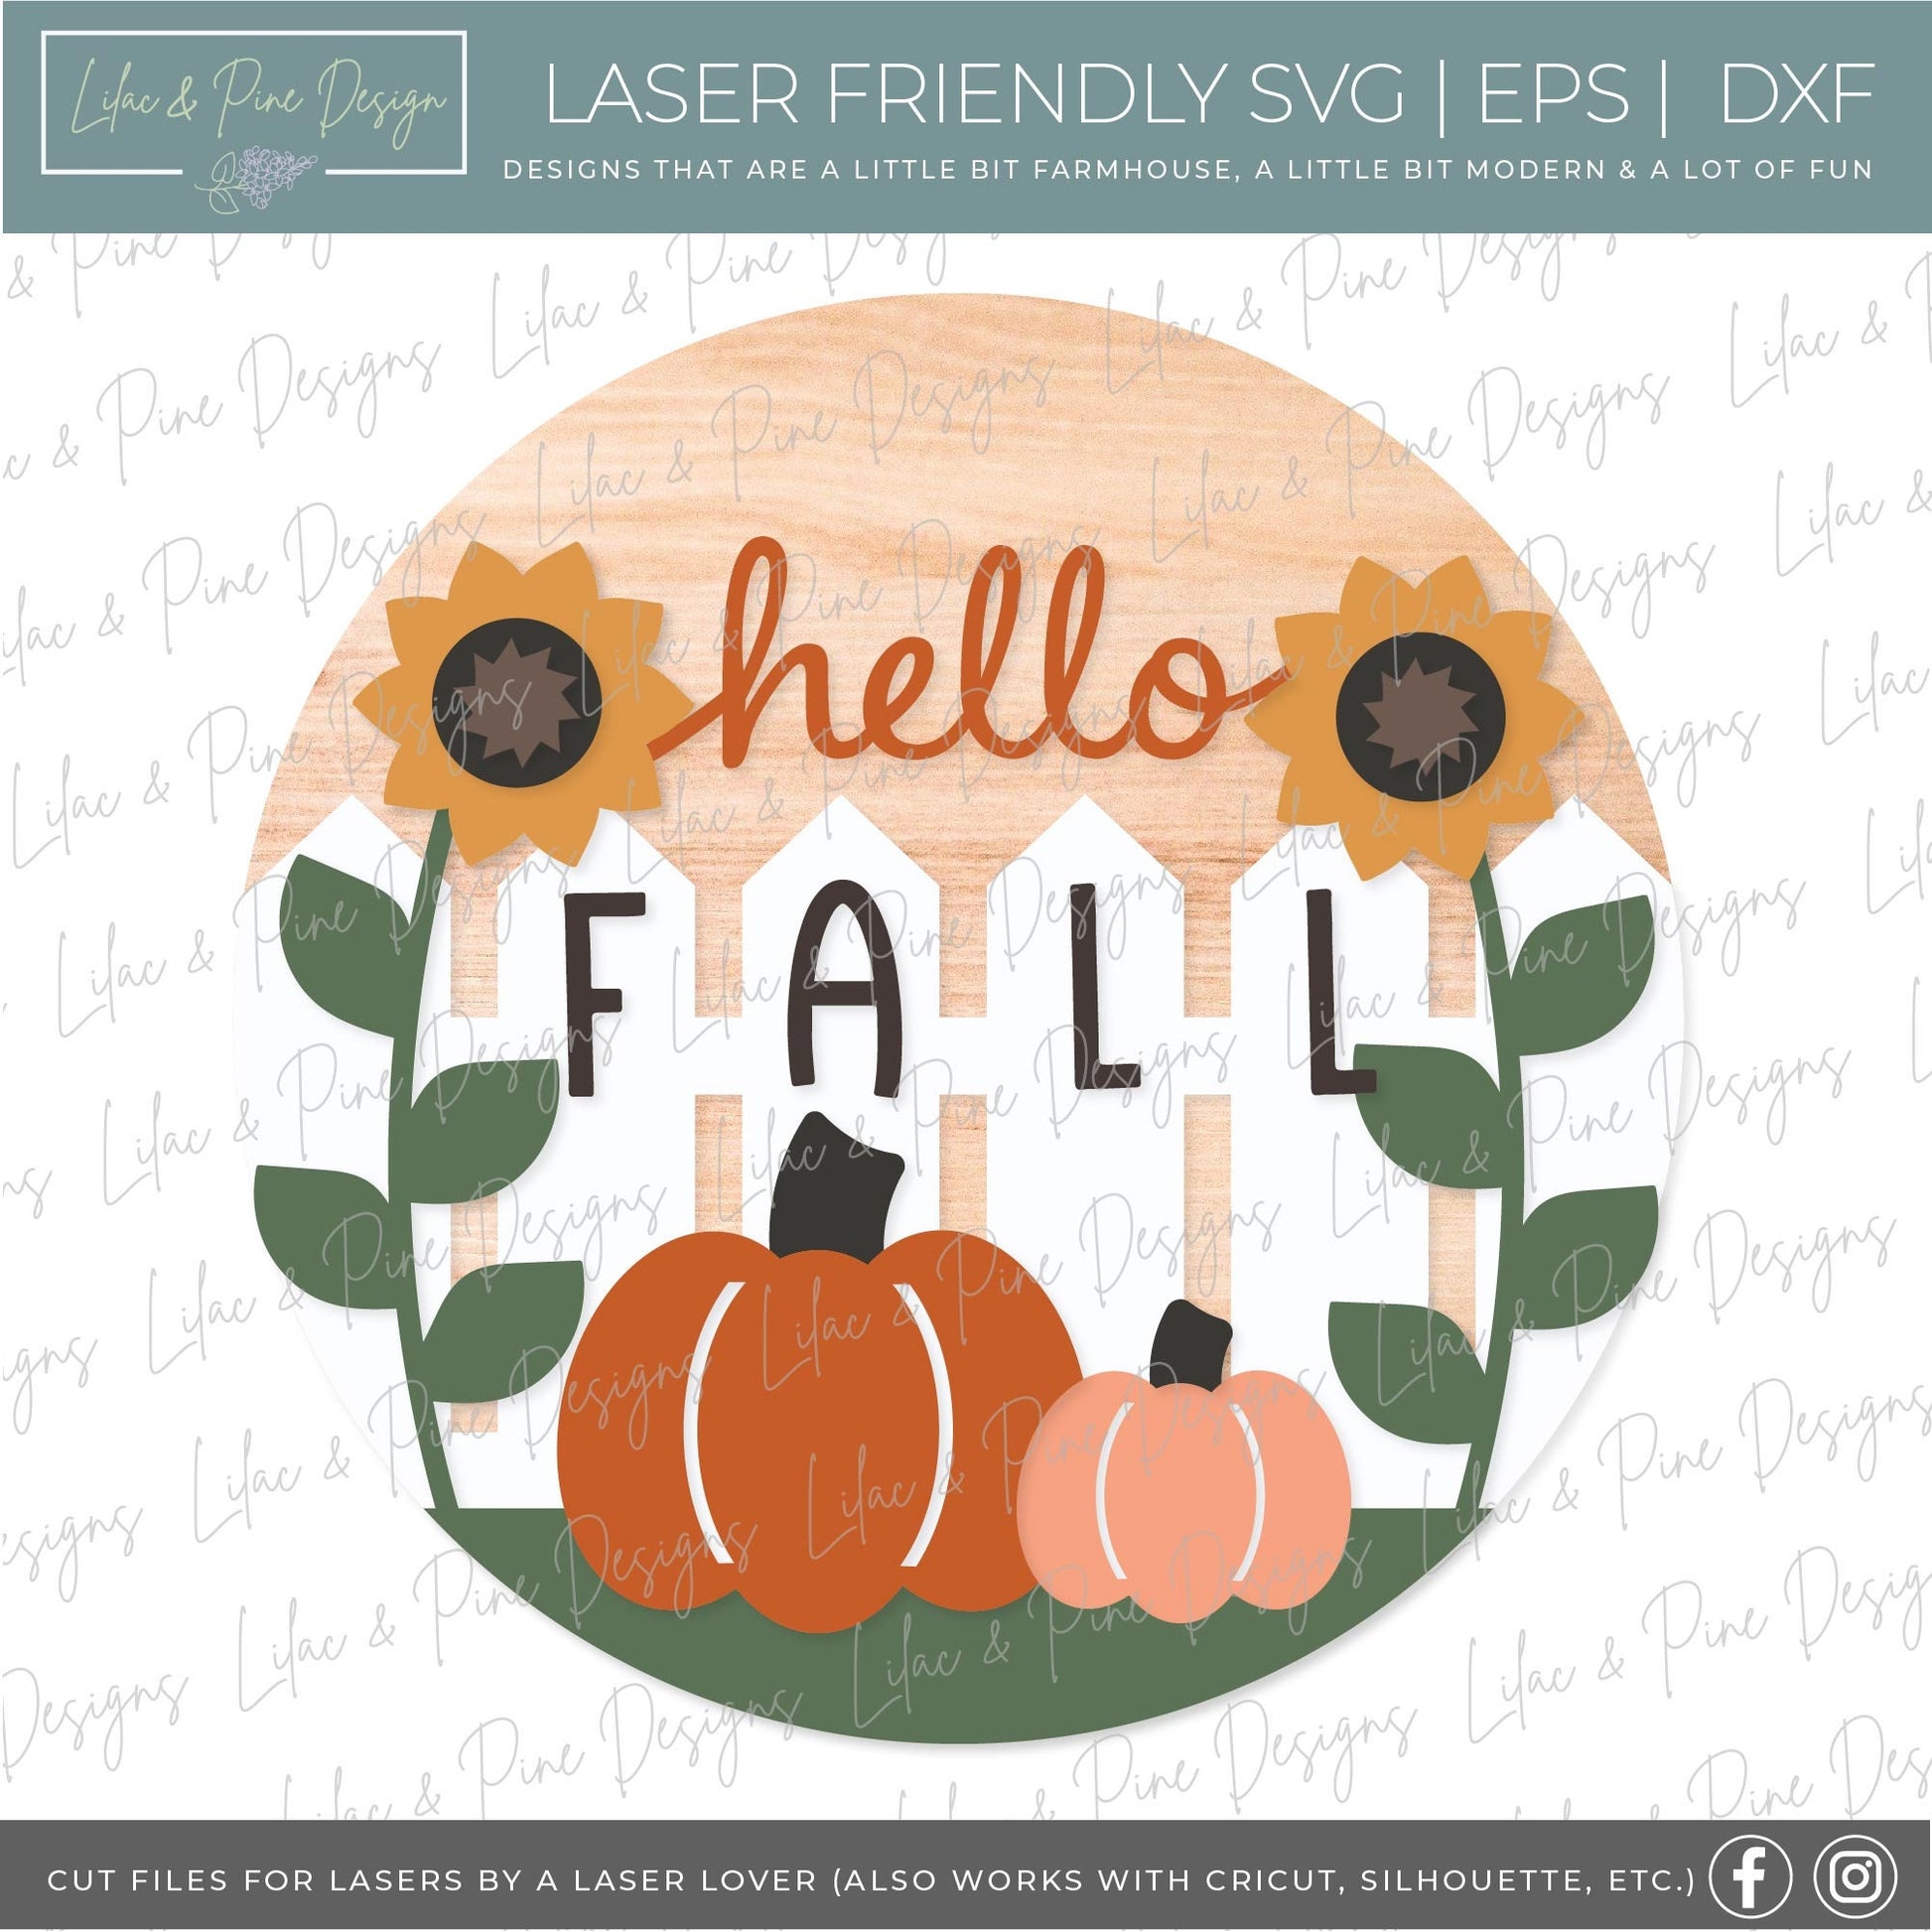 Hello Fall door hanger SVG, Sunflower welcome sign SVG, Pumpkin door hanger svg, Fall porch decor, Autumn svg, Glowforge SVG, laser cut file